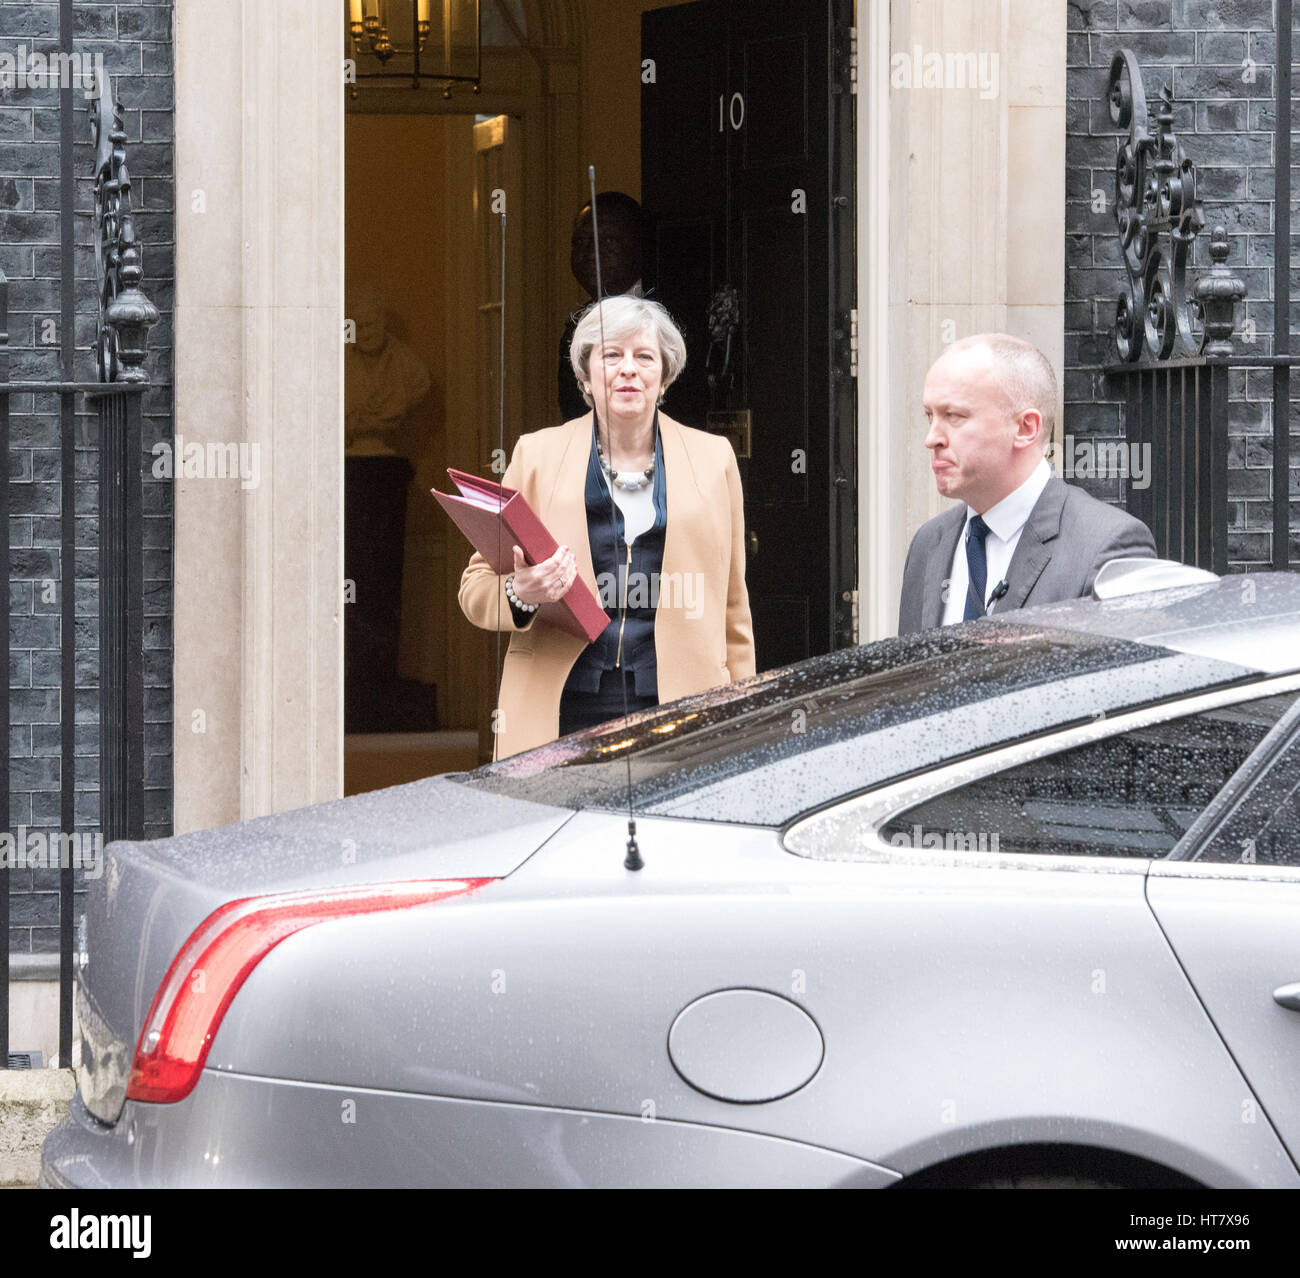 Londres, Reino Unido. 8 de Mar, 2017. El Primer Ministro deja 10 Downing Street delante del crédito presupuestario: Ian Davidson/Alamy Live News Foto de stock